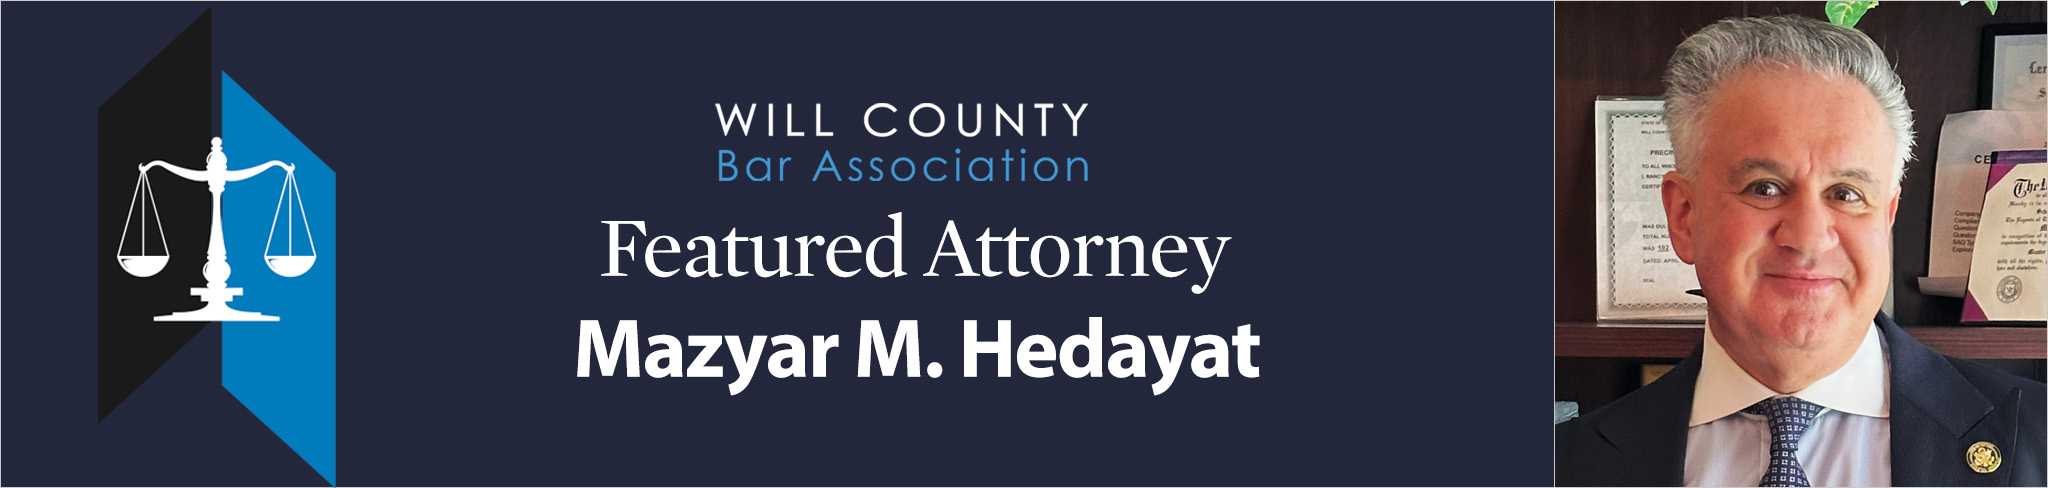 Featured Attorney Mazyar M. Hedayat